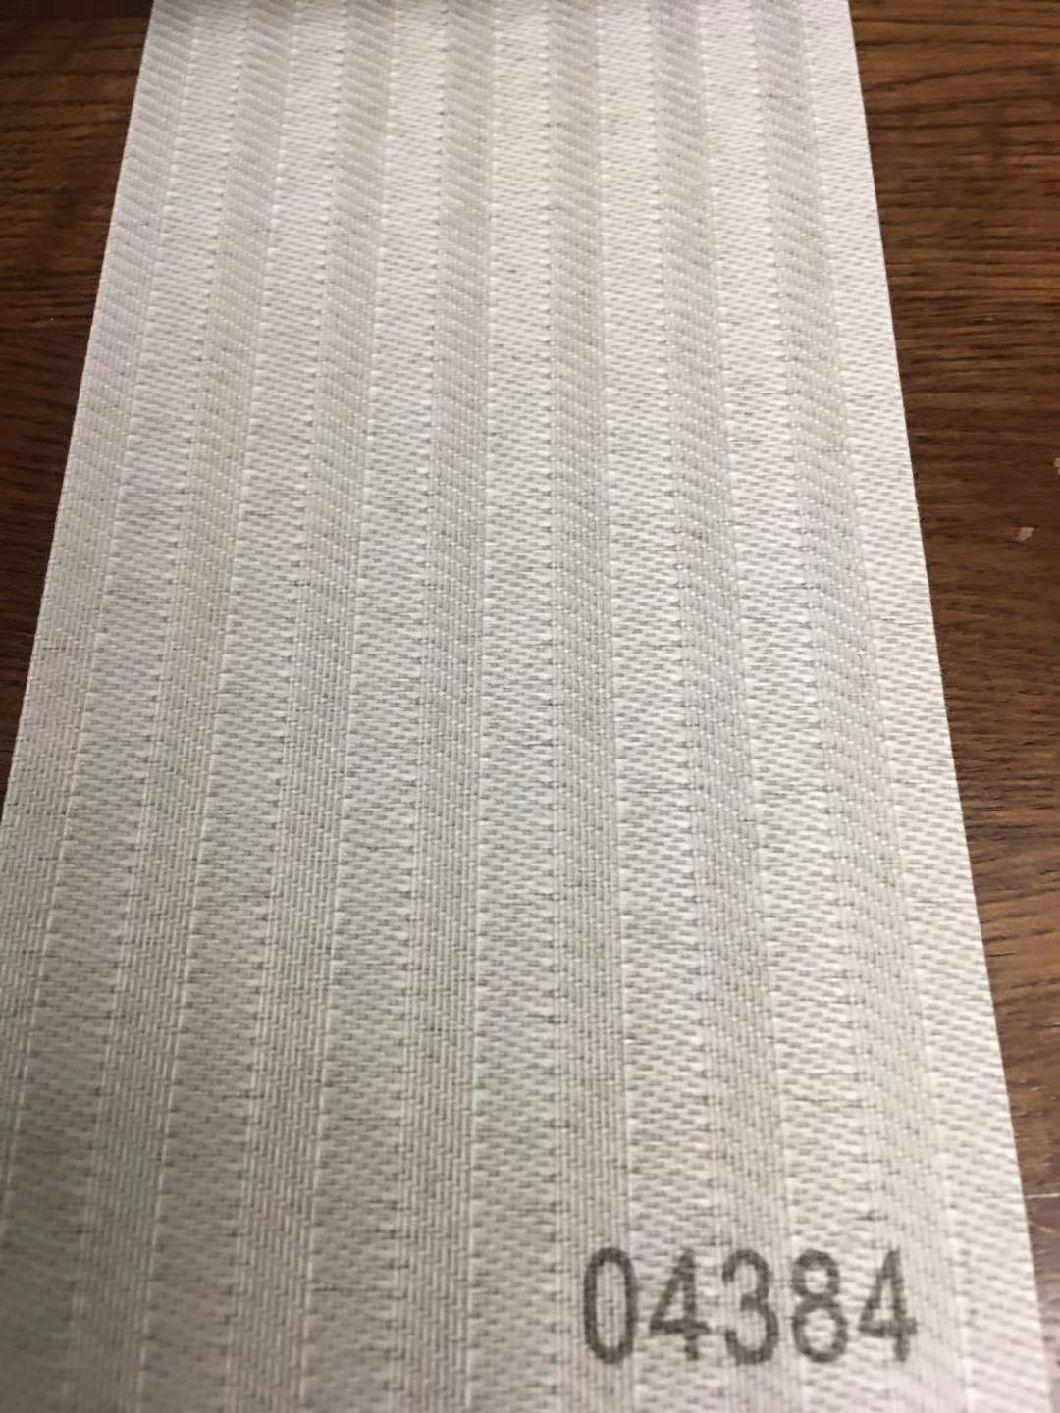 V22 Vertical Blinds Fabric